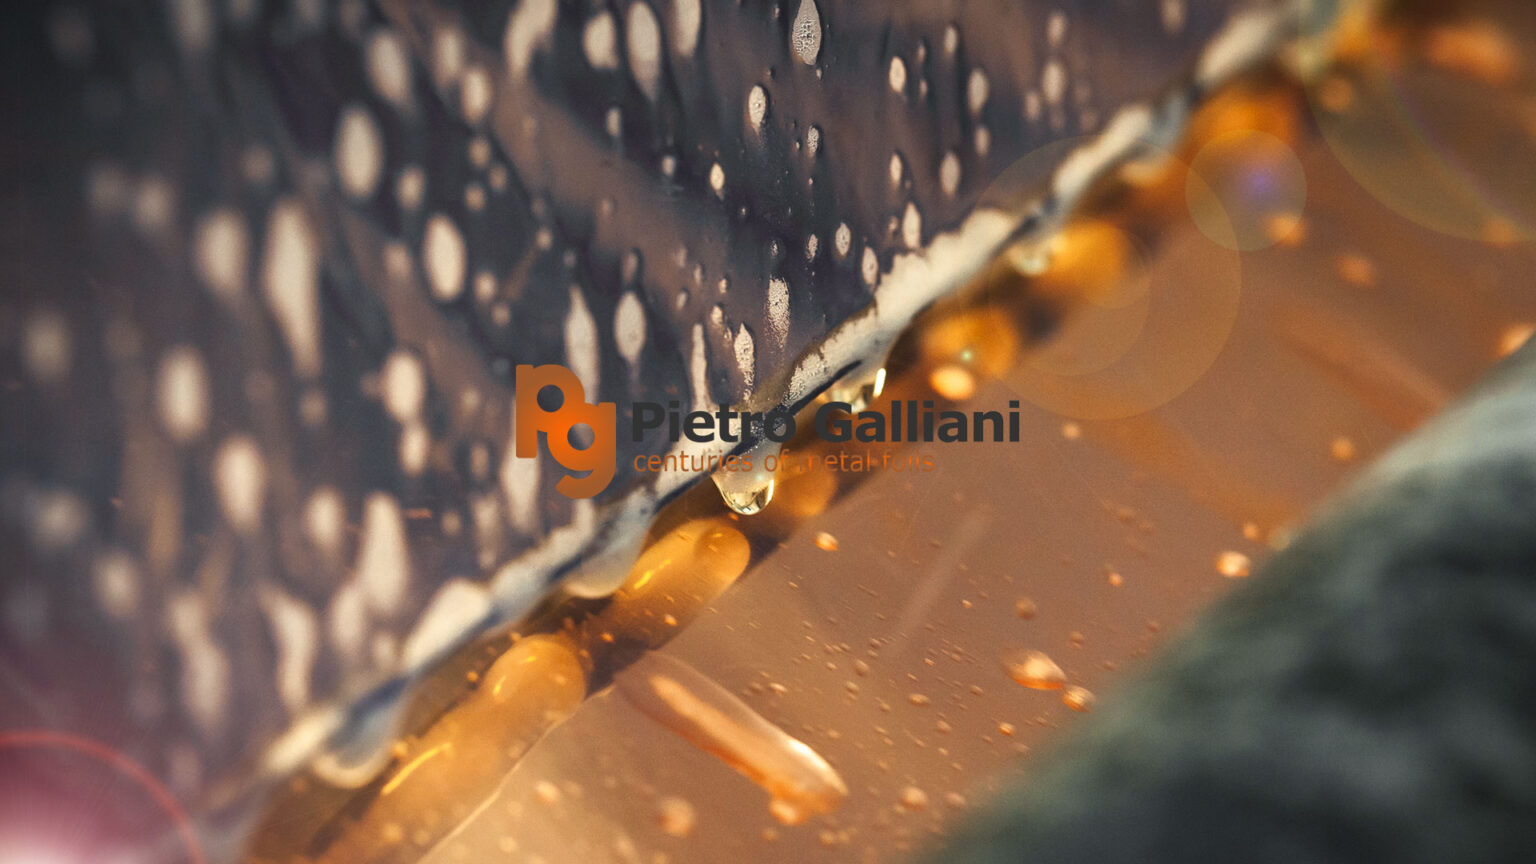 Pietro Galliani - Restyling immagine aziendale - Studio FLO